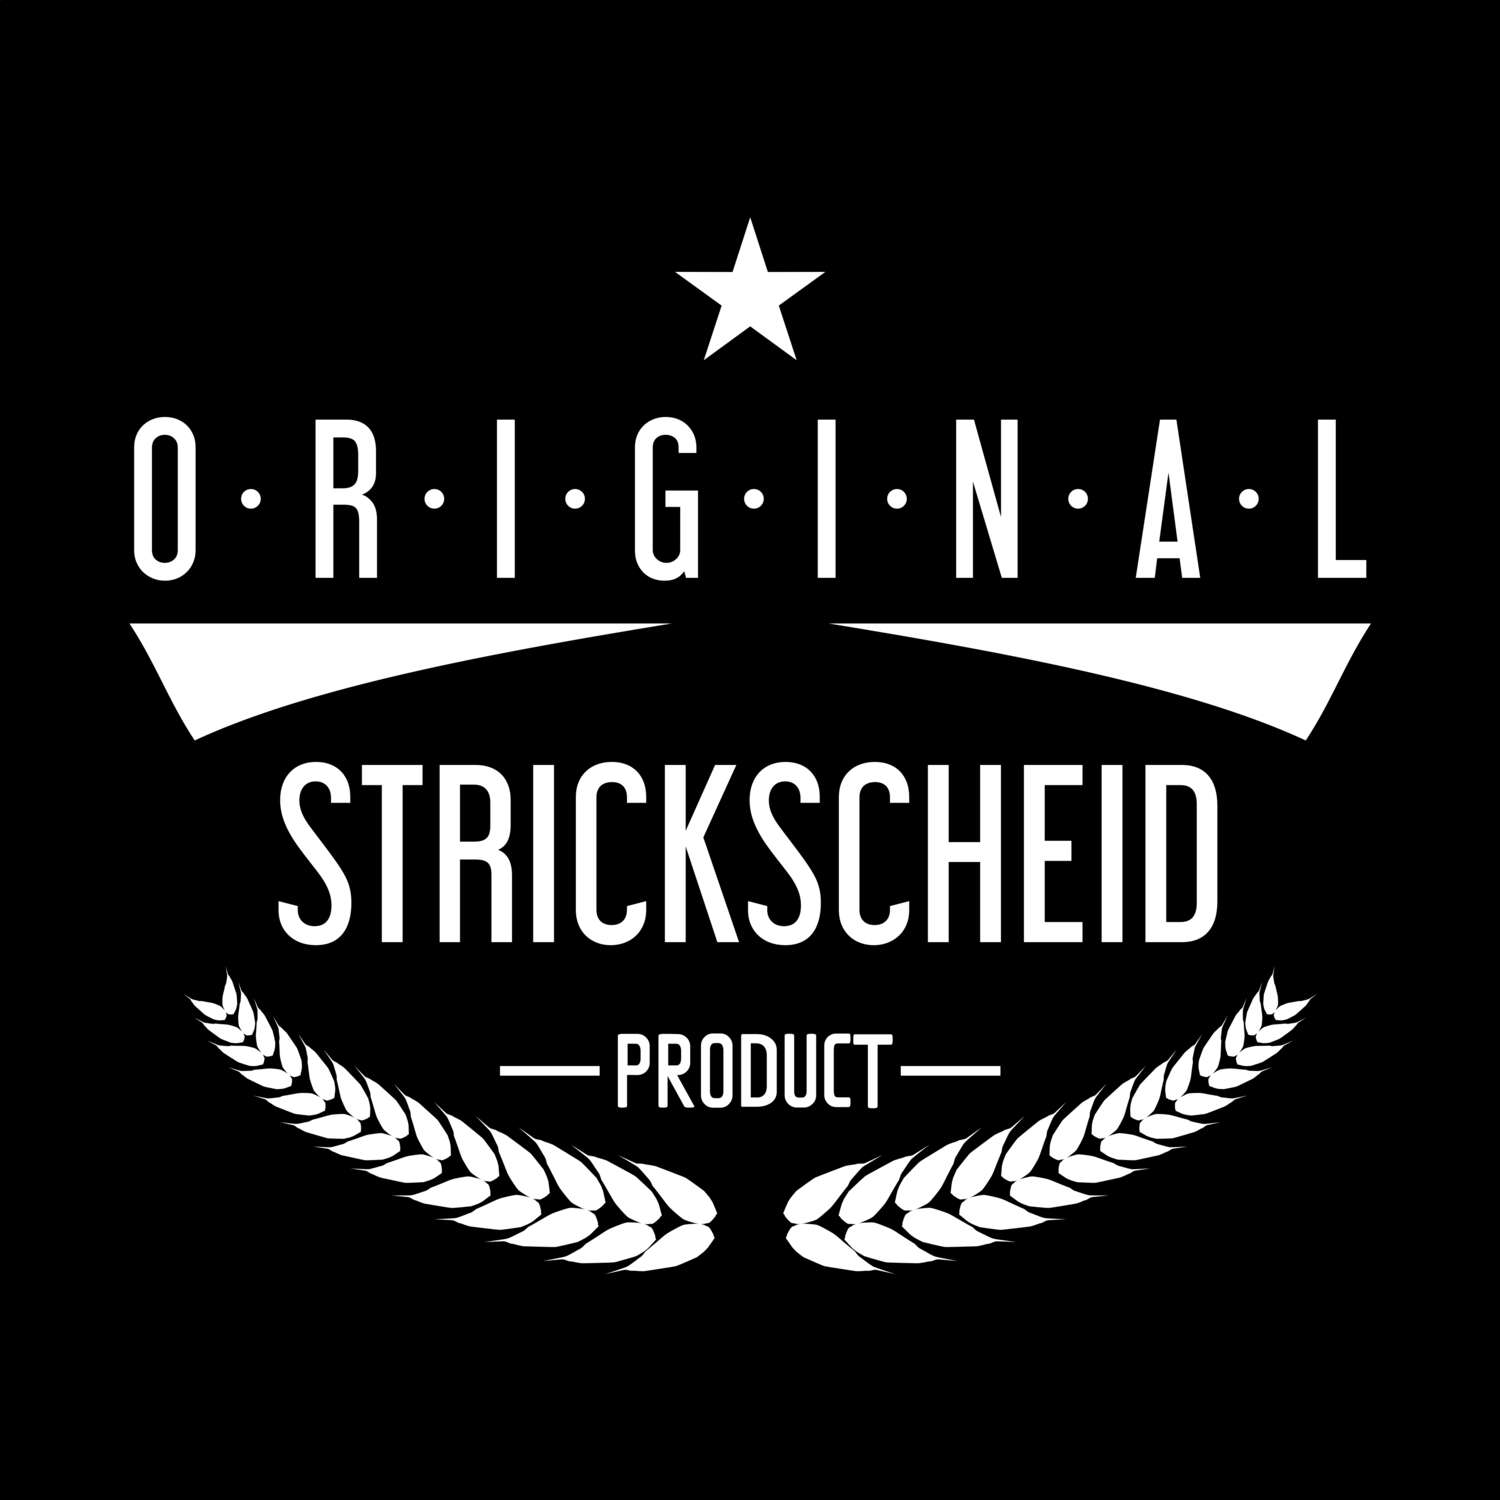 Strickscheid T-Shirt »Original Product«